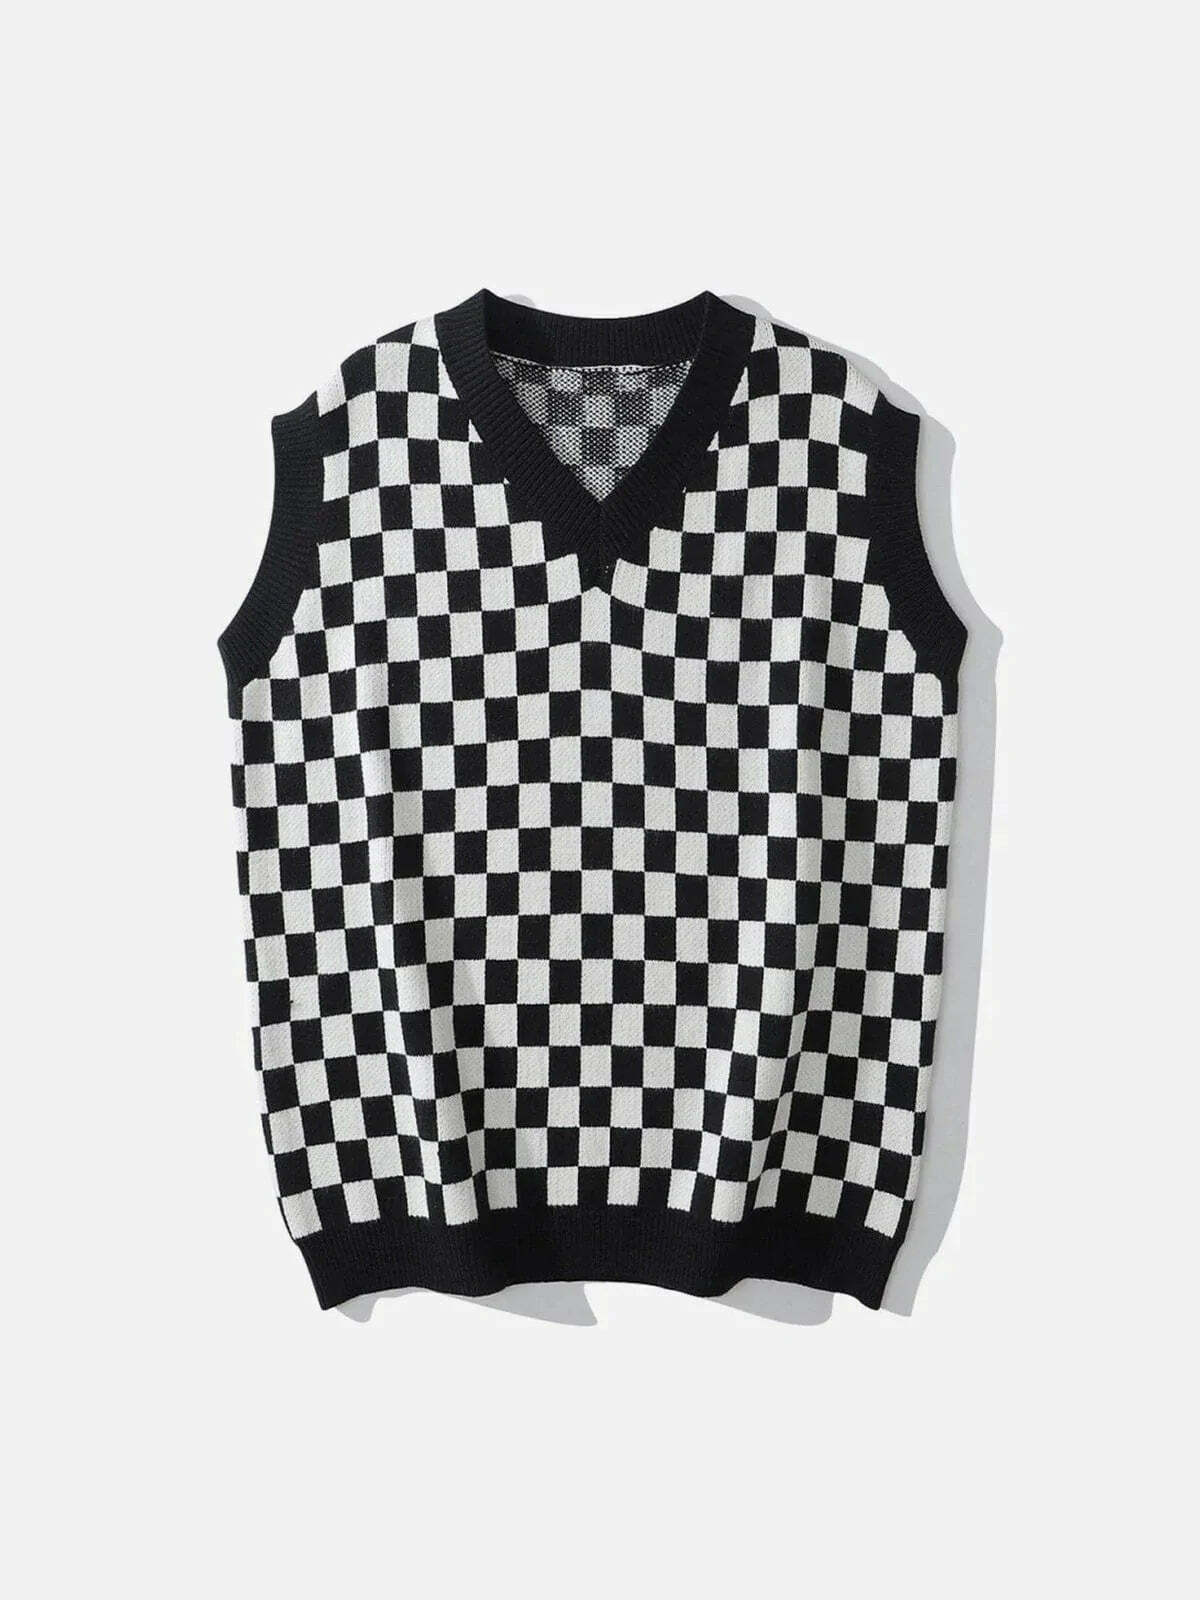 checkerboard print sweater vest edgy urban statement 6313